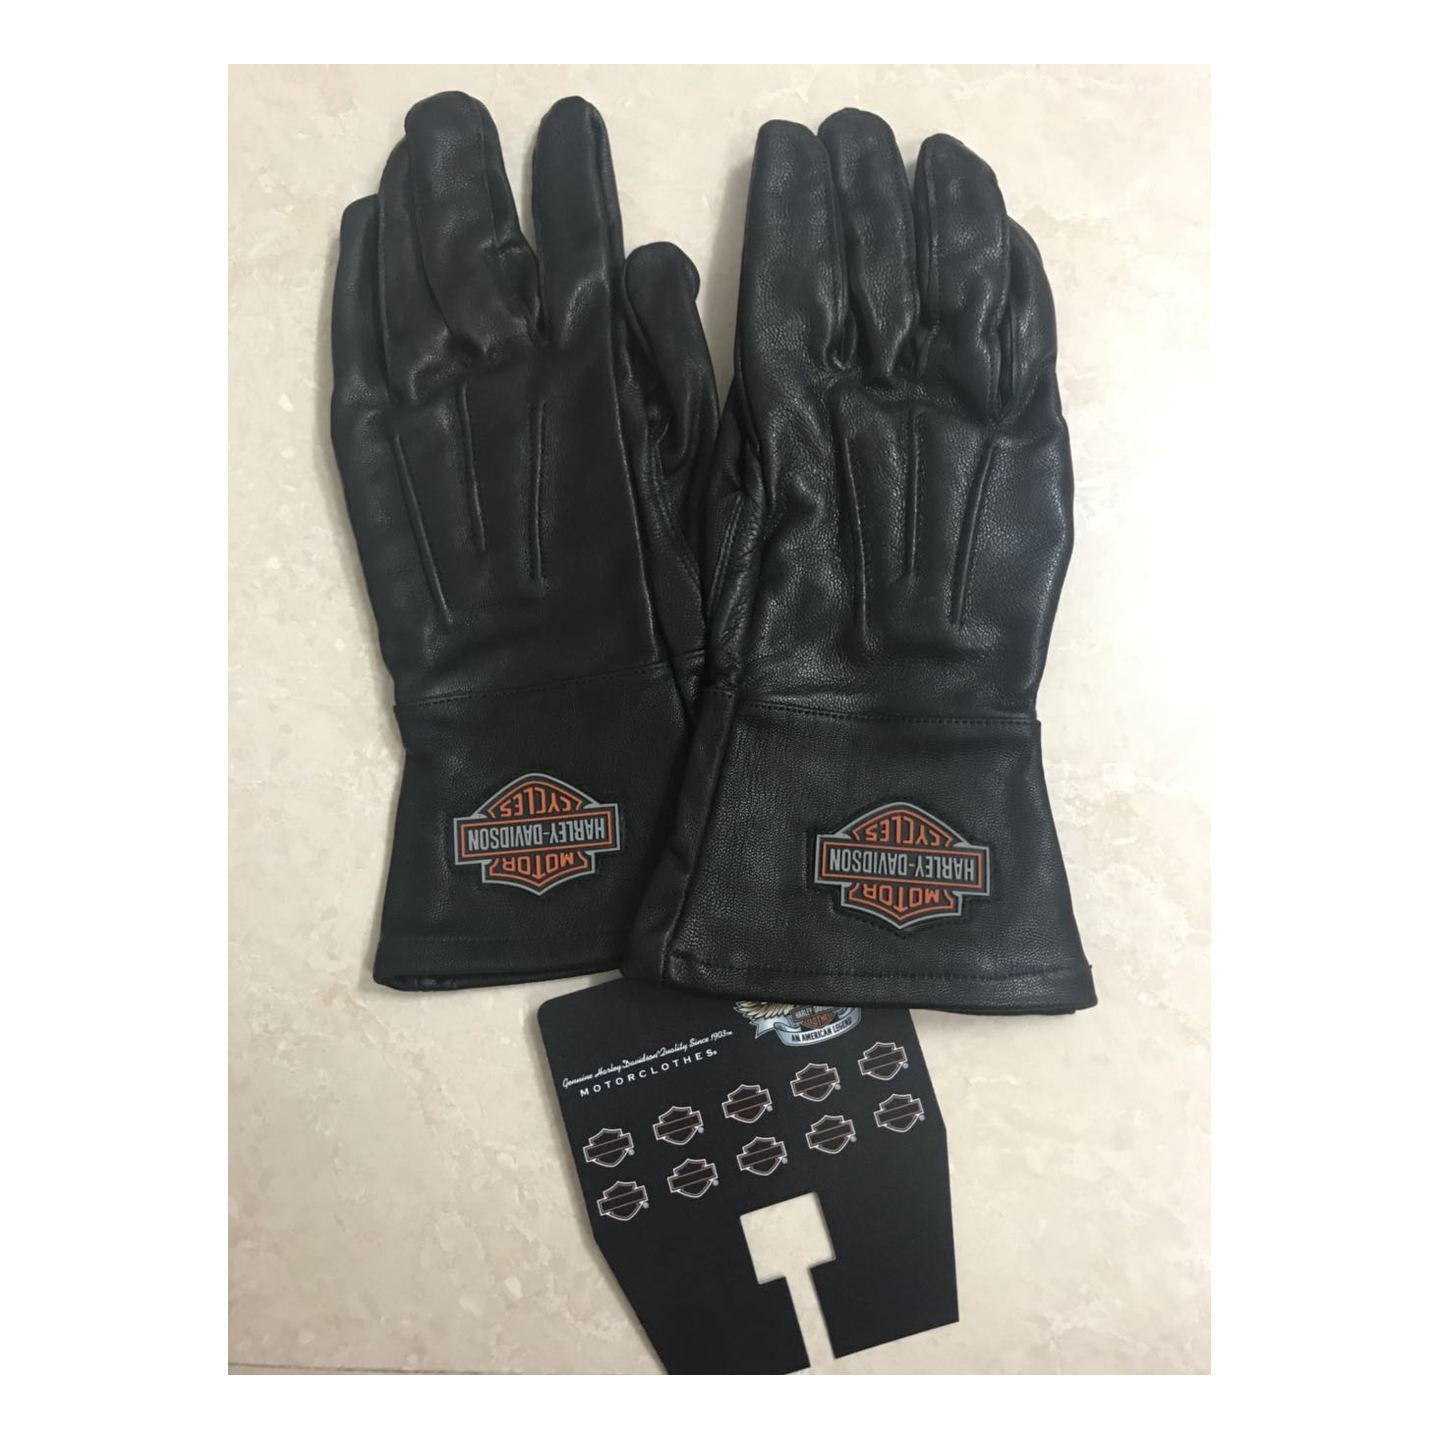 Harley Davidson long leather gloves